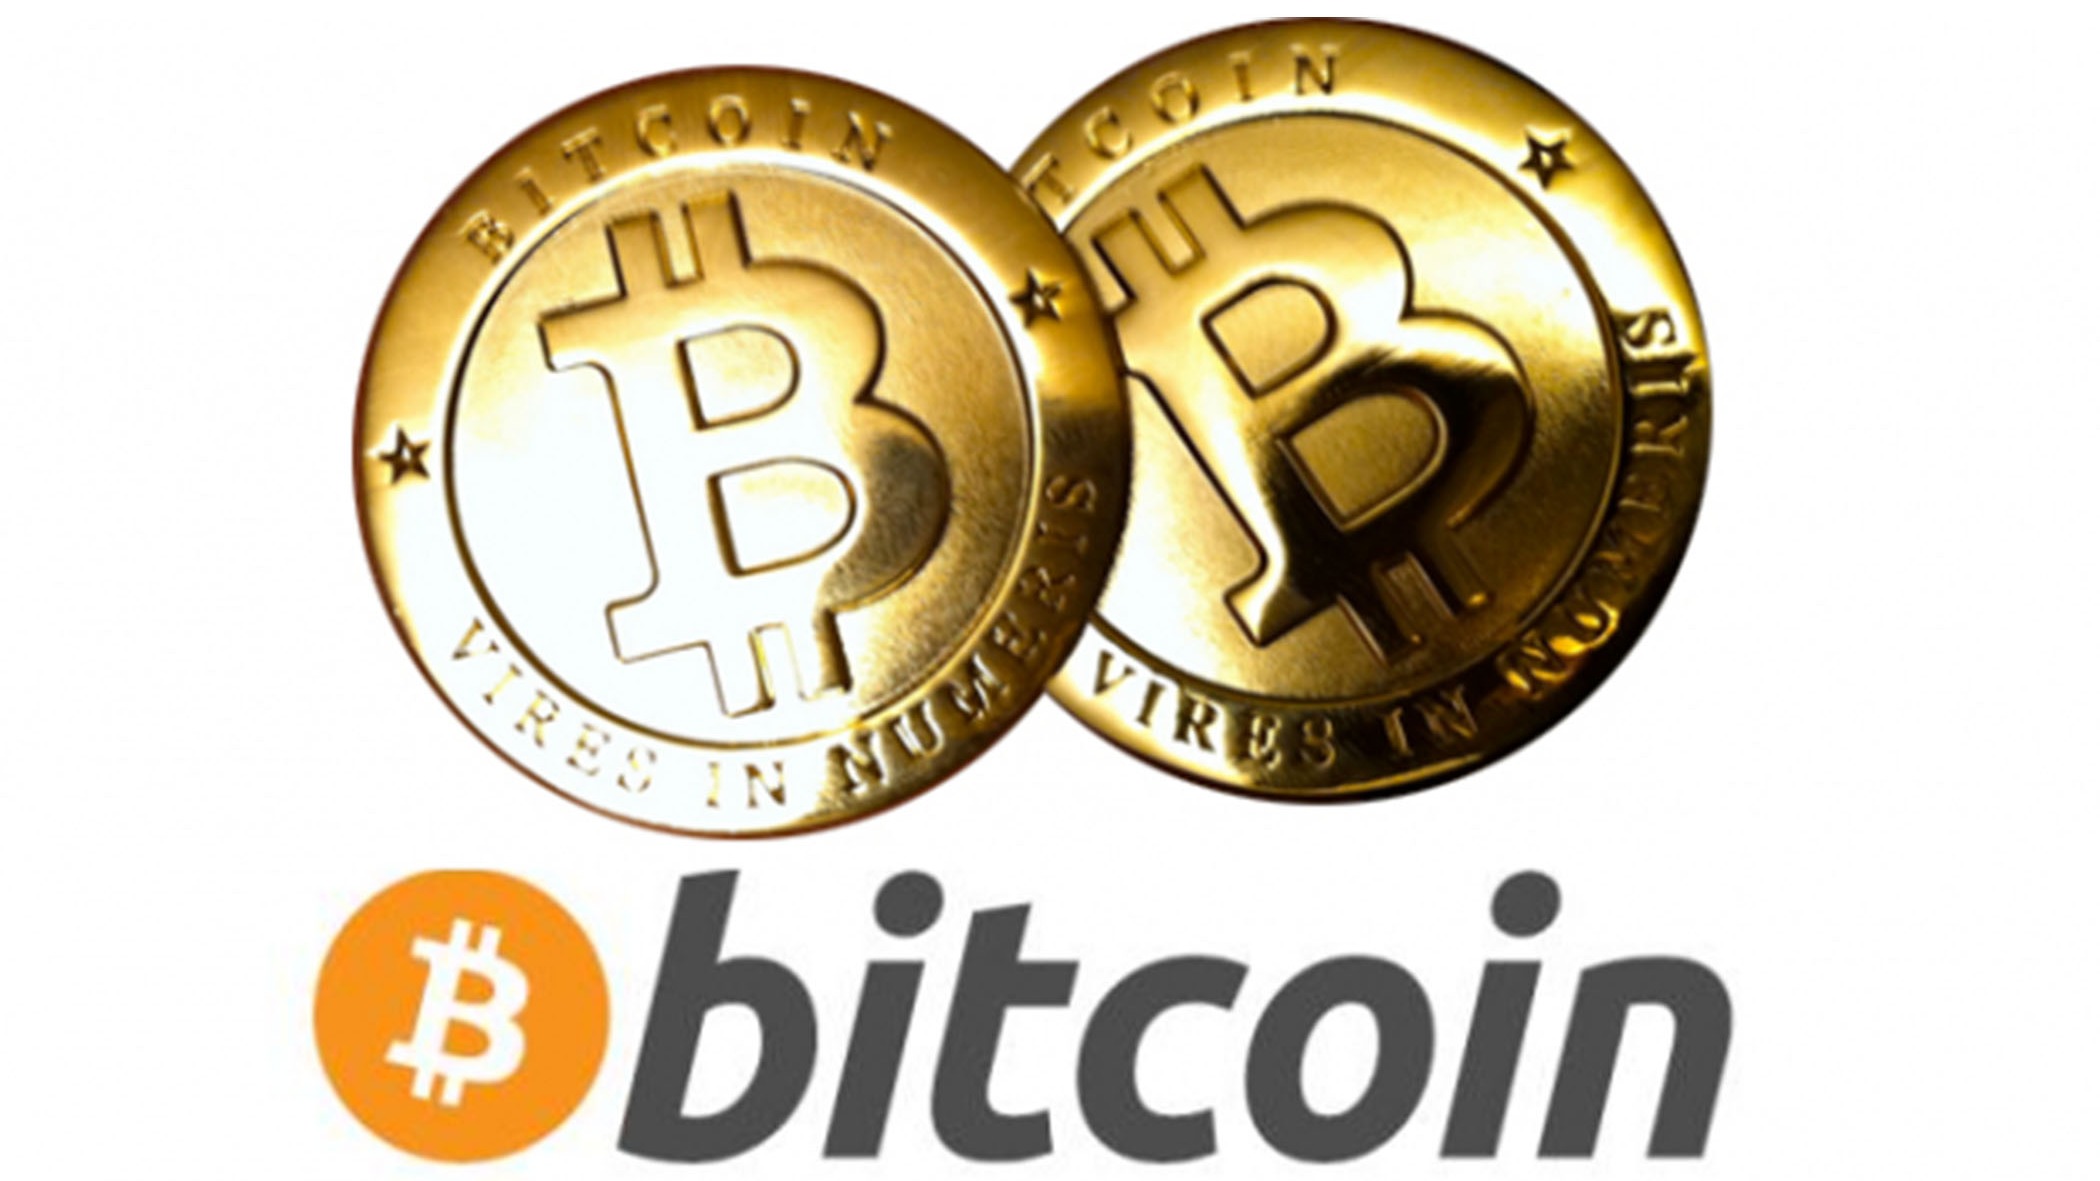 BitcoinTraining.com